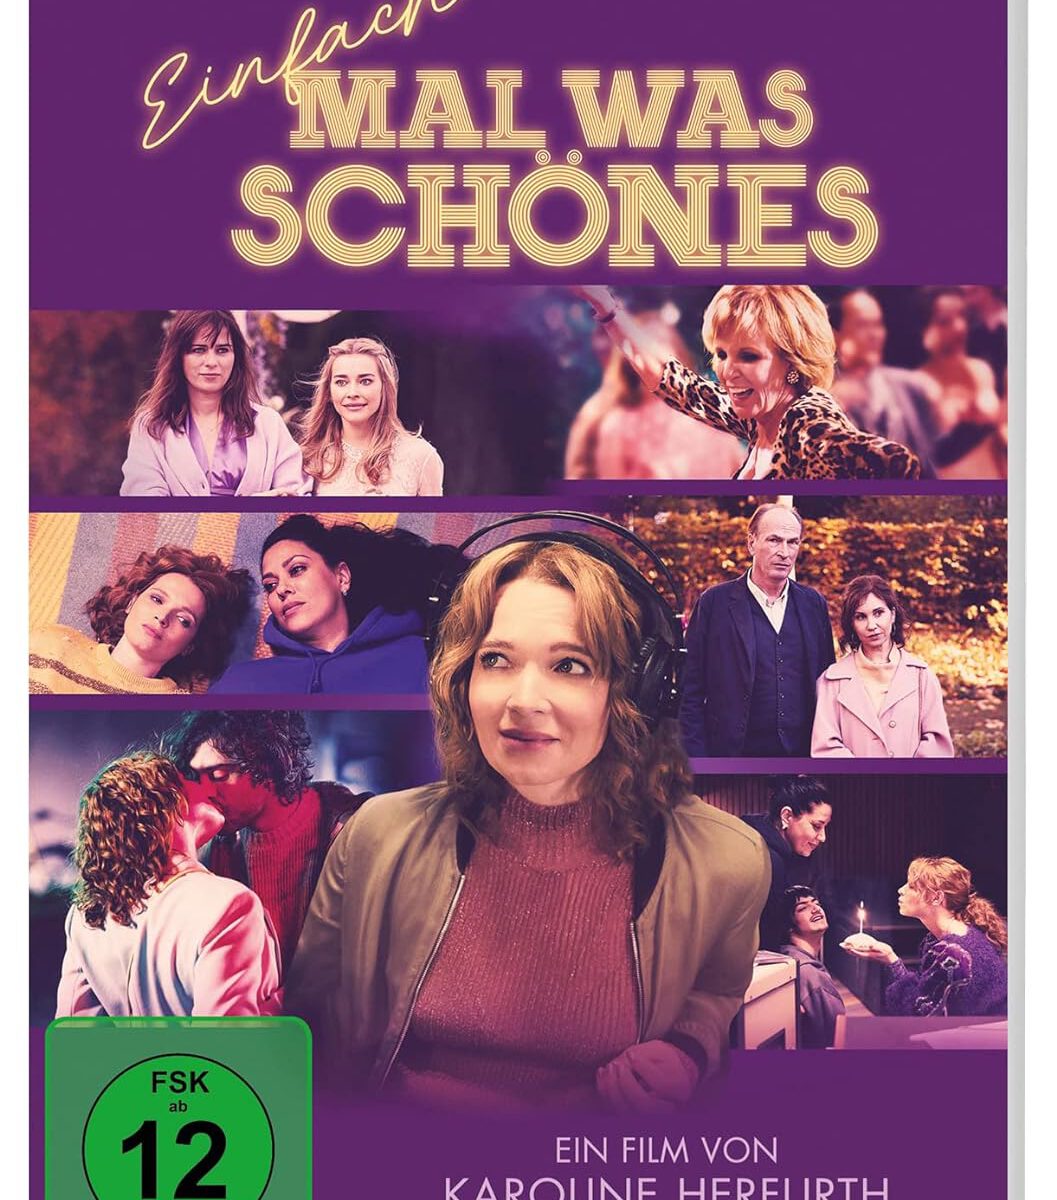 "Einfach mal was schönes" - DVD-Cover